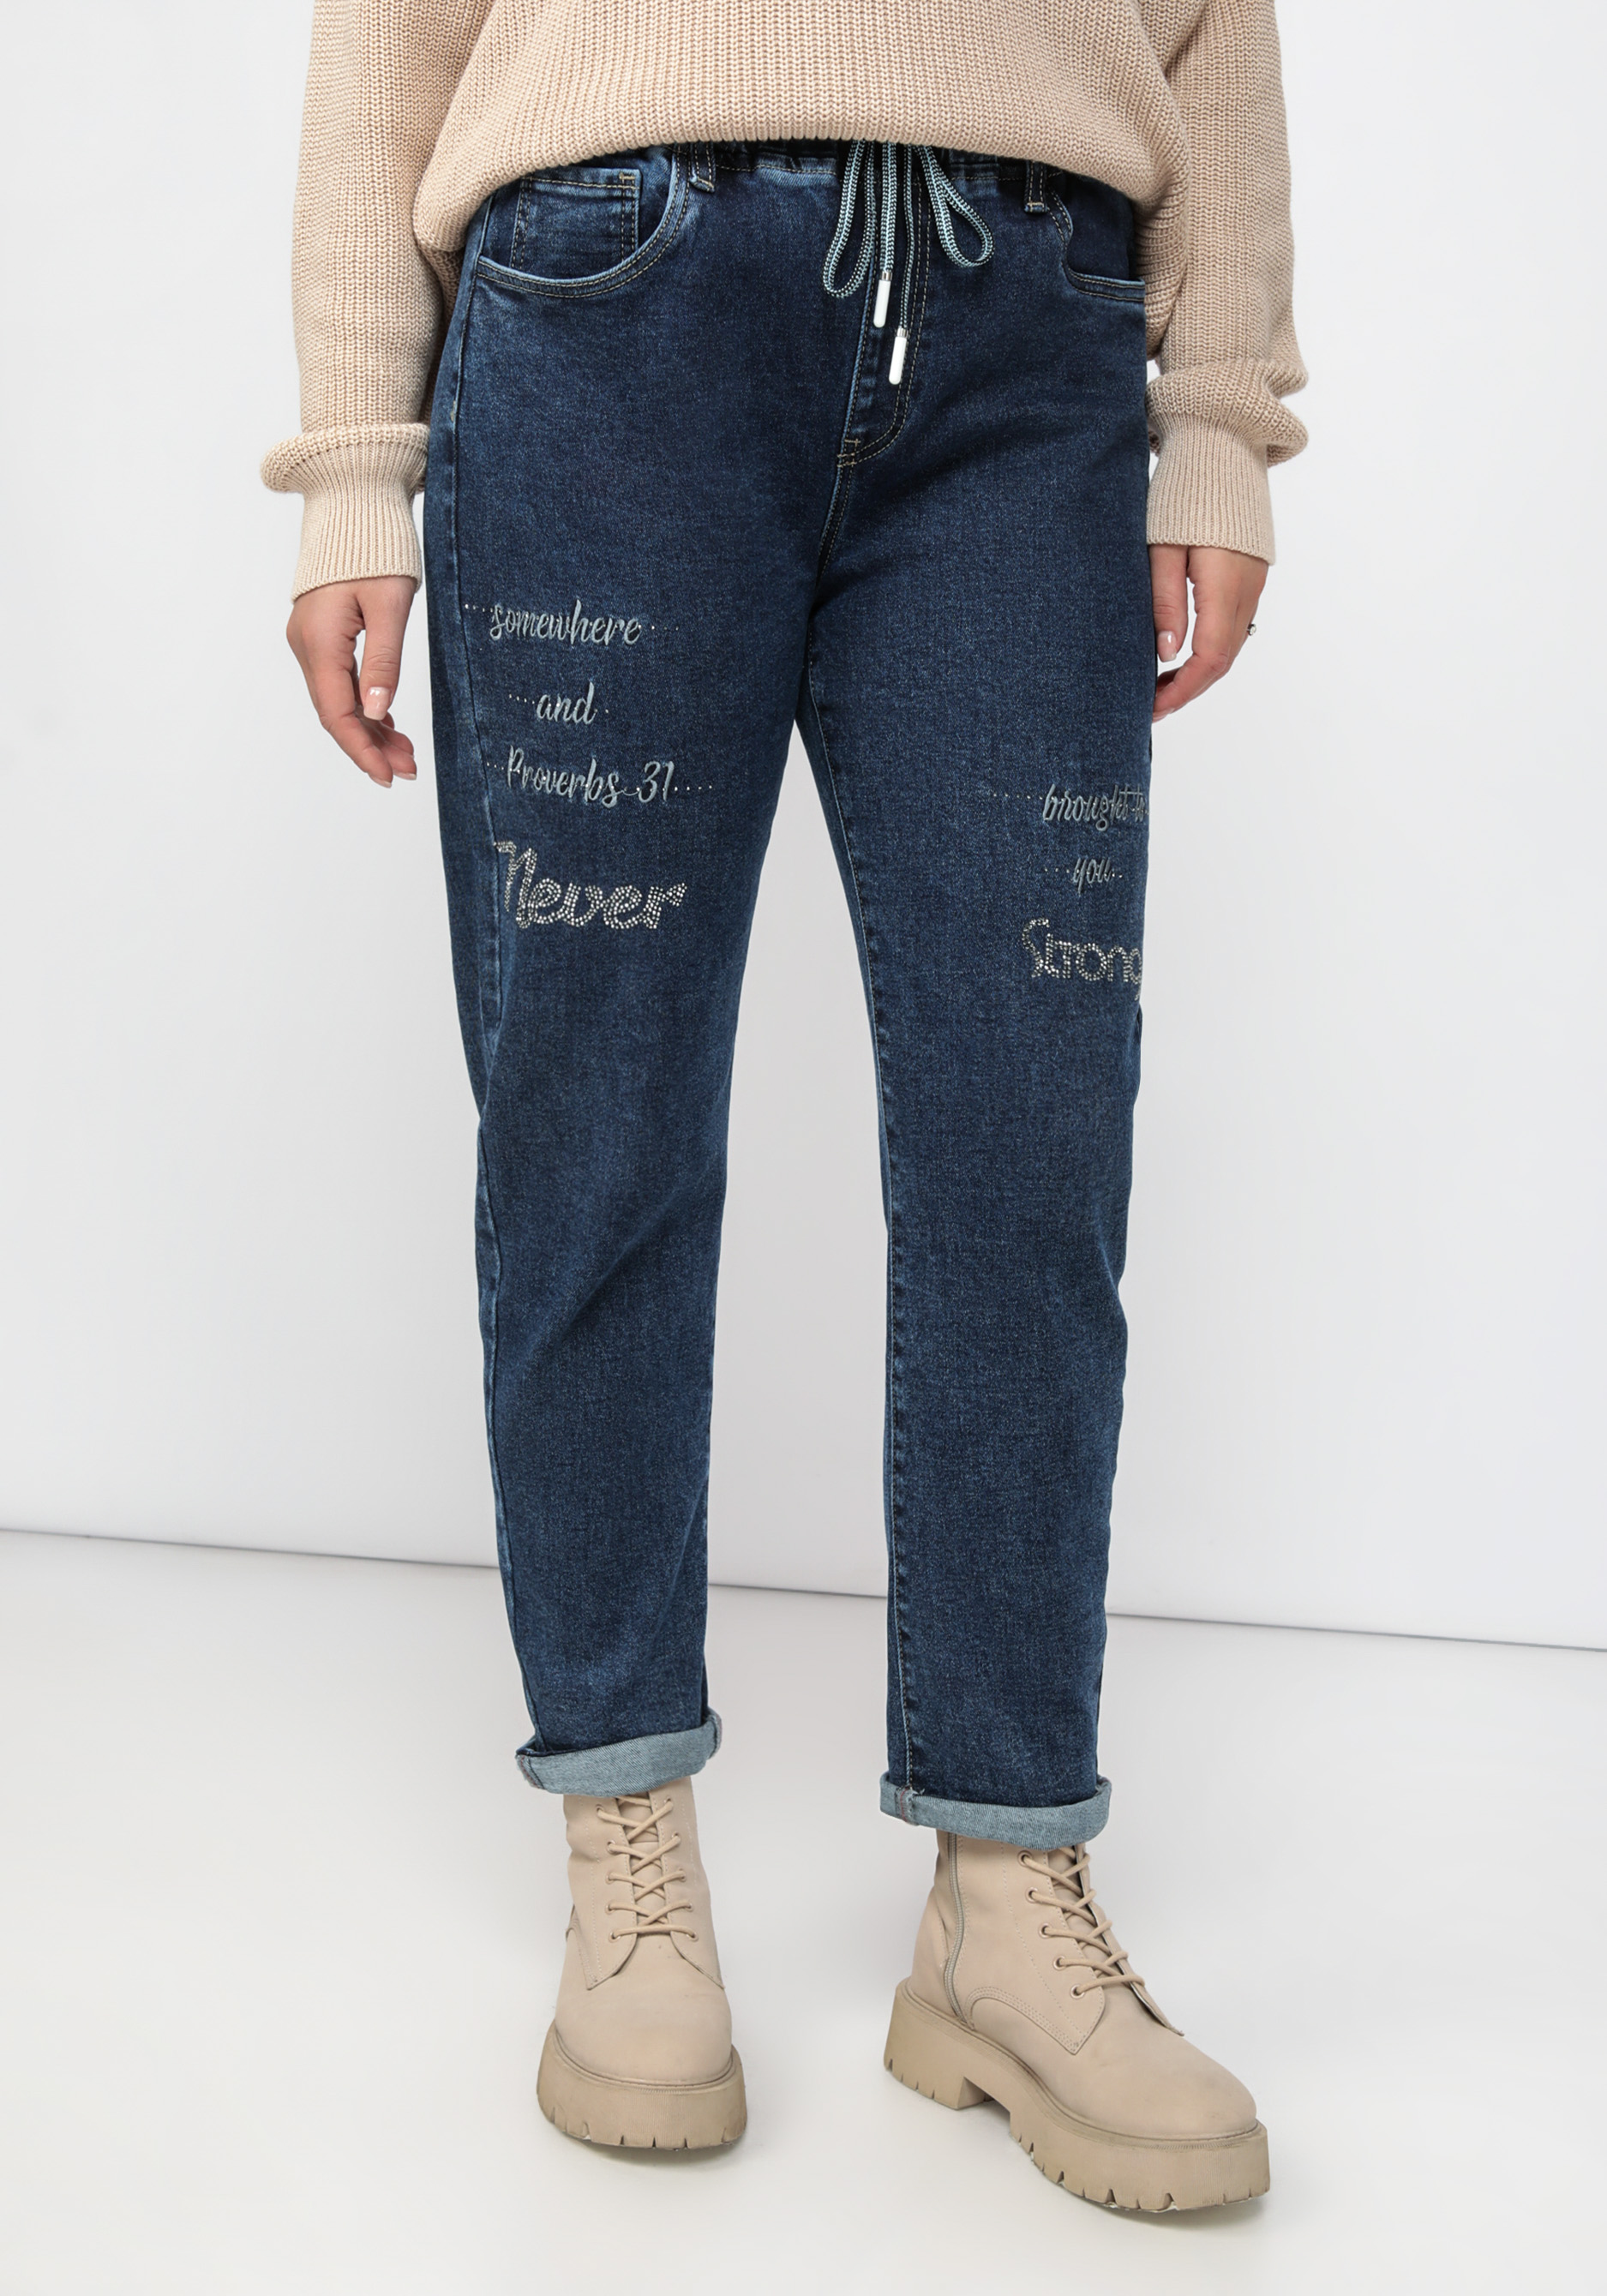 Джинсы декорированные стразами юбка мини джинсы